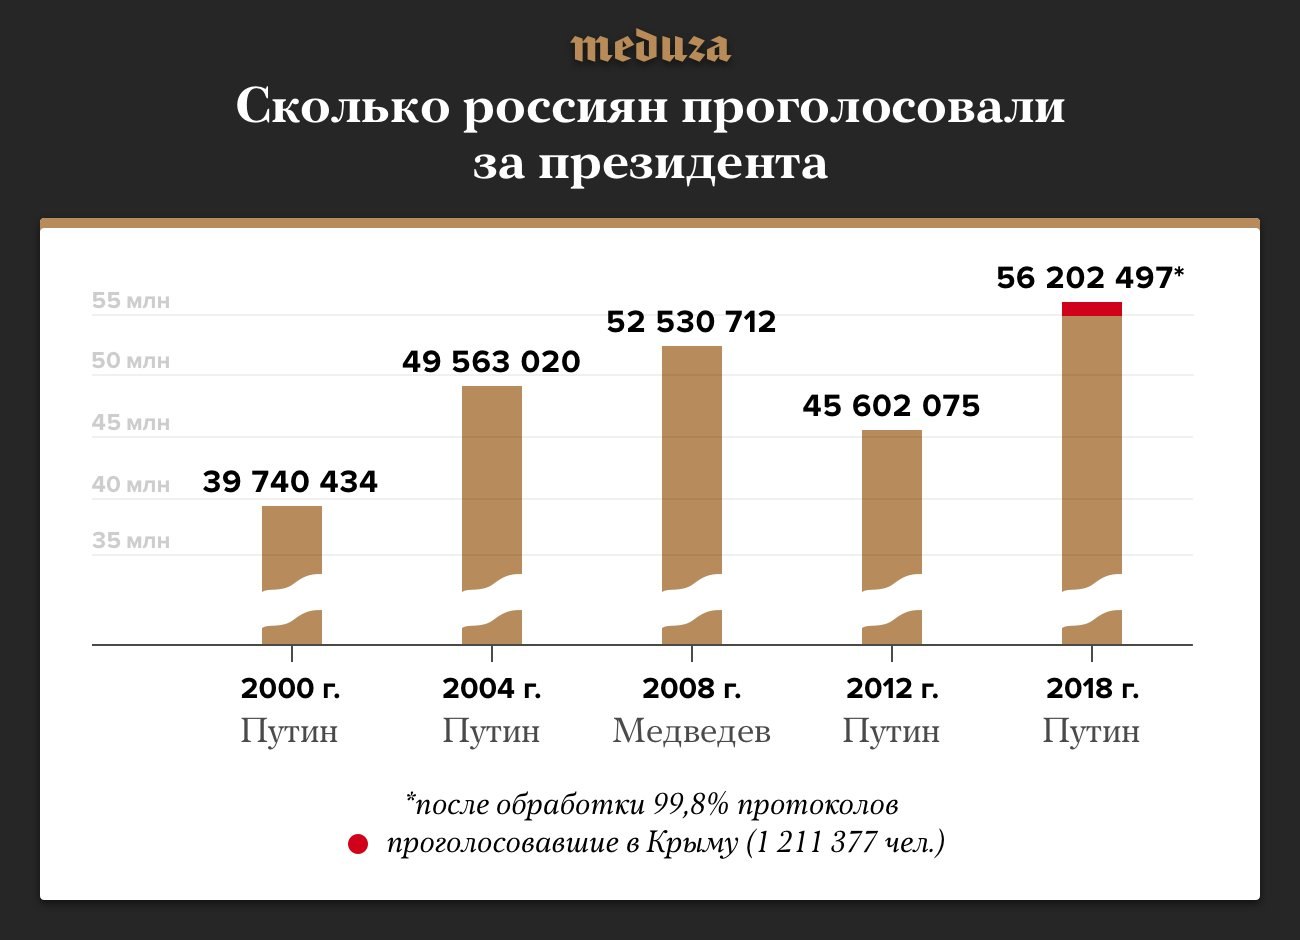 Сколько процентов проголосовало в 2018 году. Сколько людей проголосовало за Путина. Сколько проголосовало за Путина в 2018. Количество людей за Путина. Сколько процентов людей за Путина.